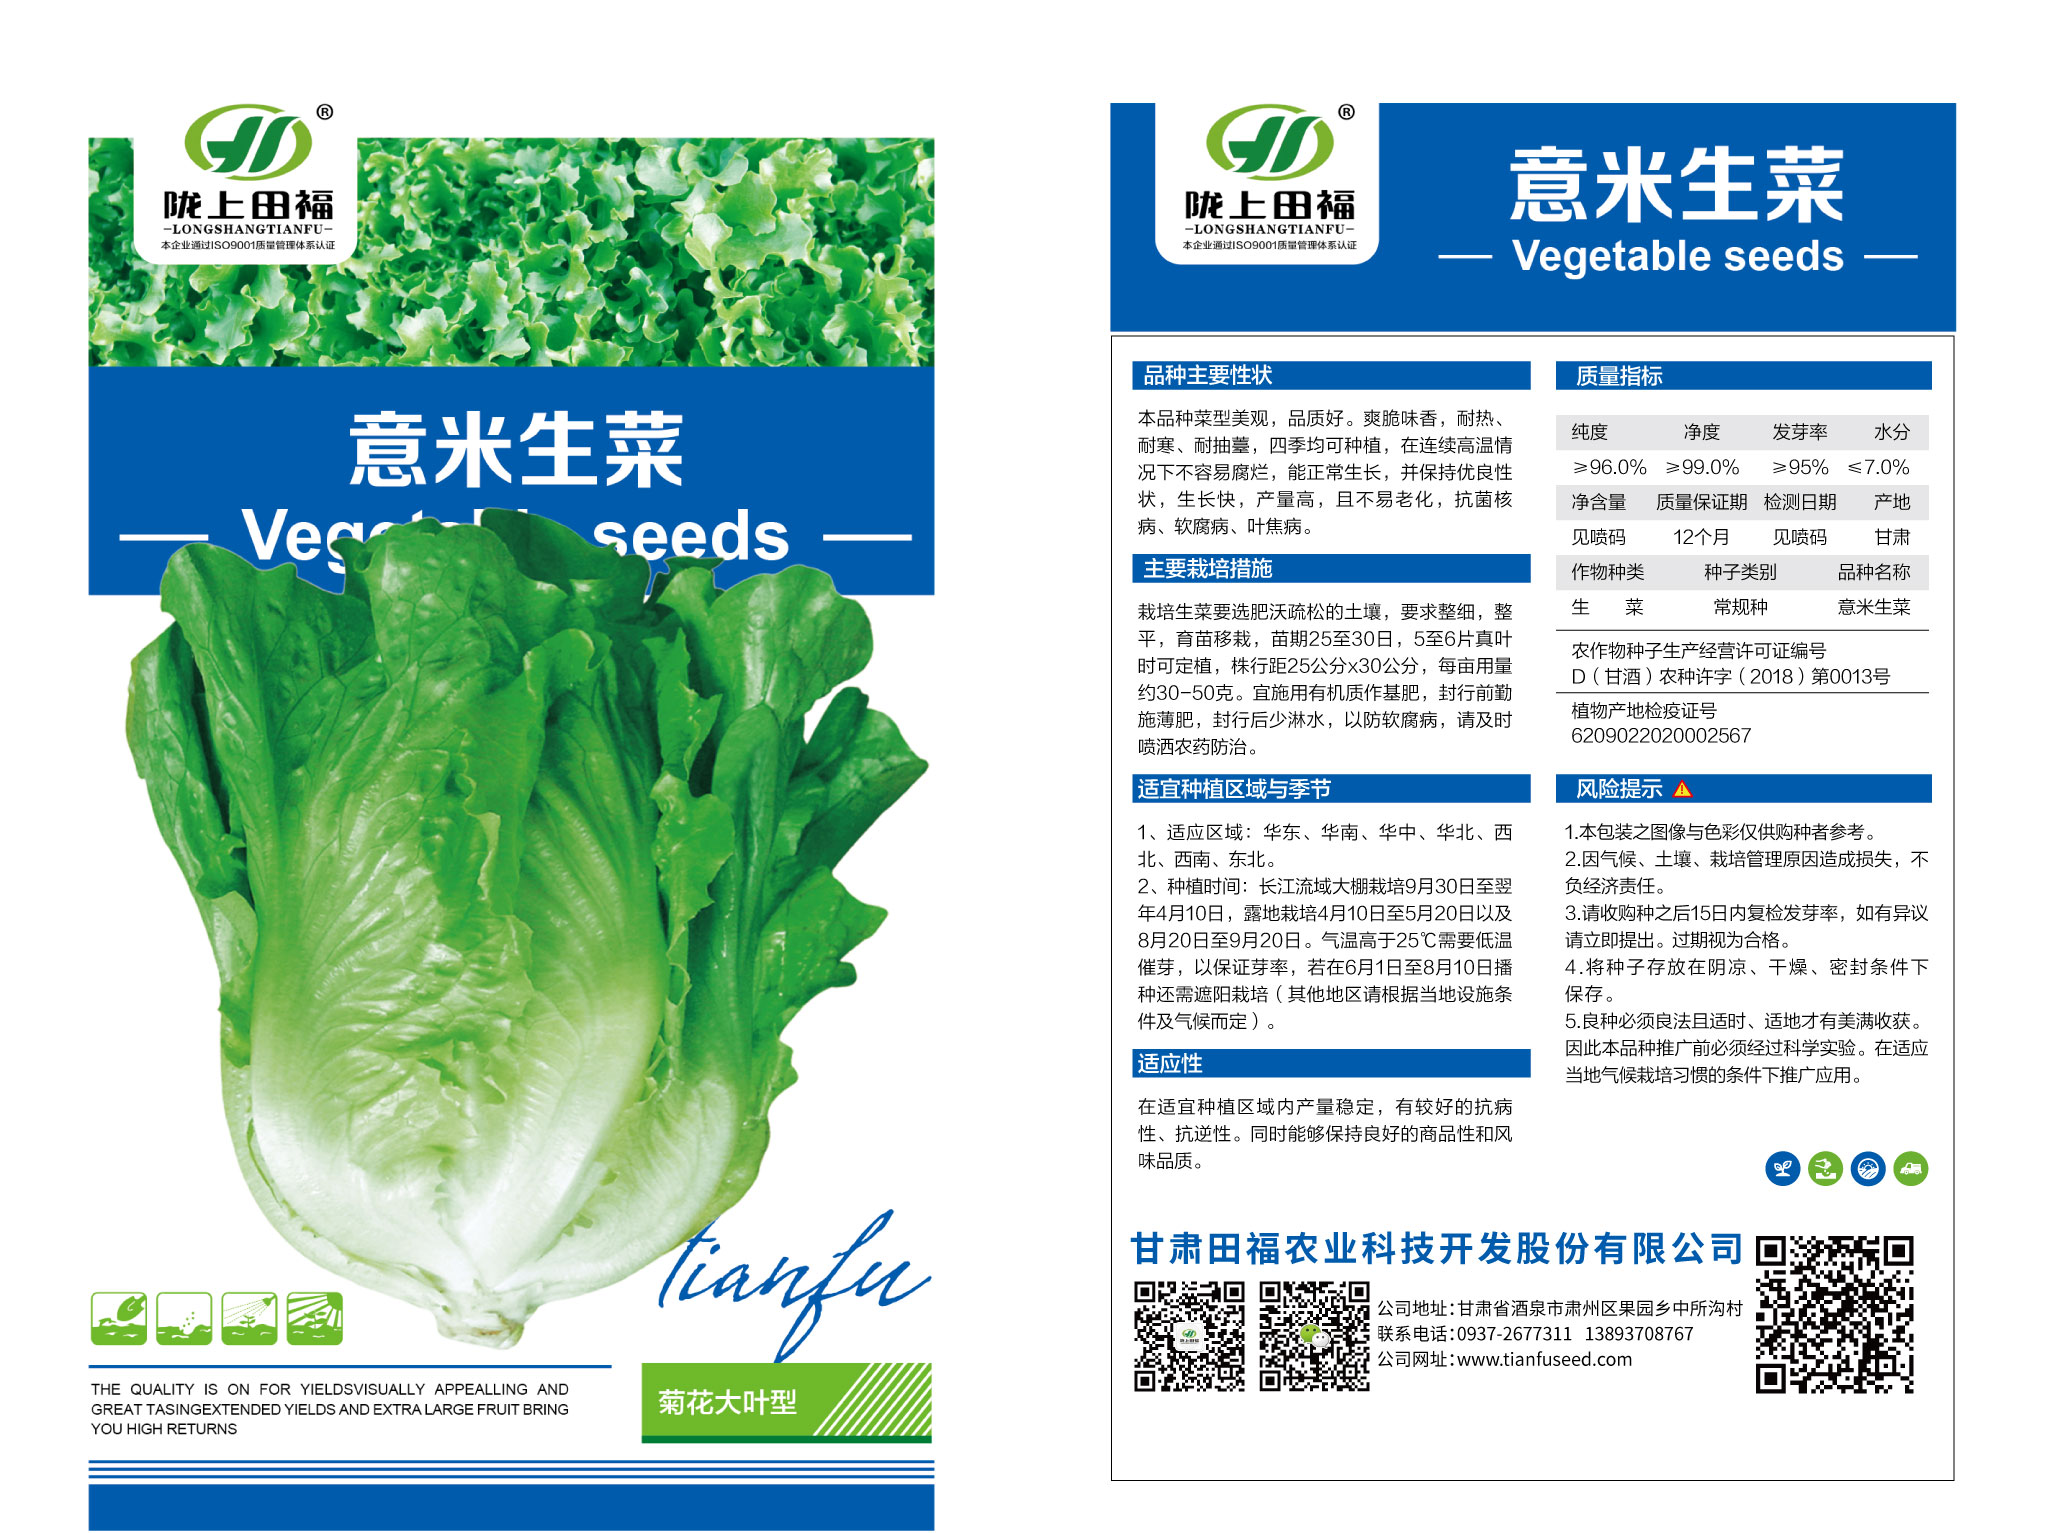 芳妮——散叶生菜种子 – 产品展示 - 北京鼎丰现代农业发展有限公司